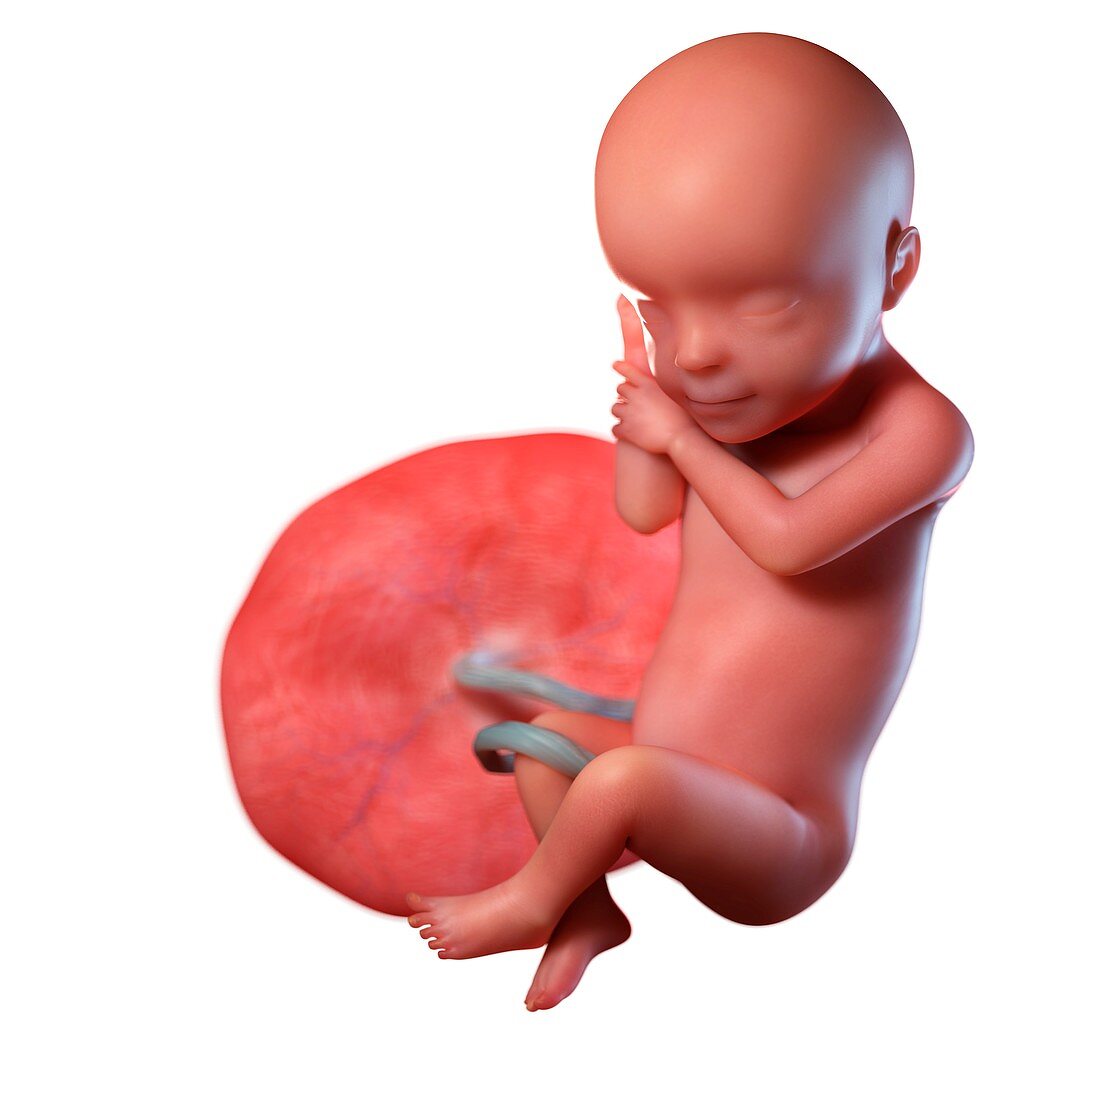 Human foetus age 30 weeks, illustration